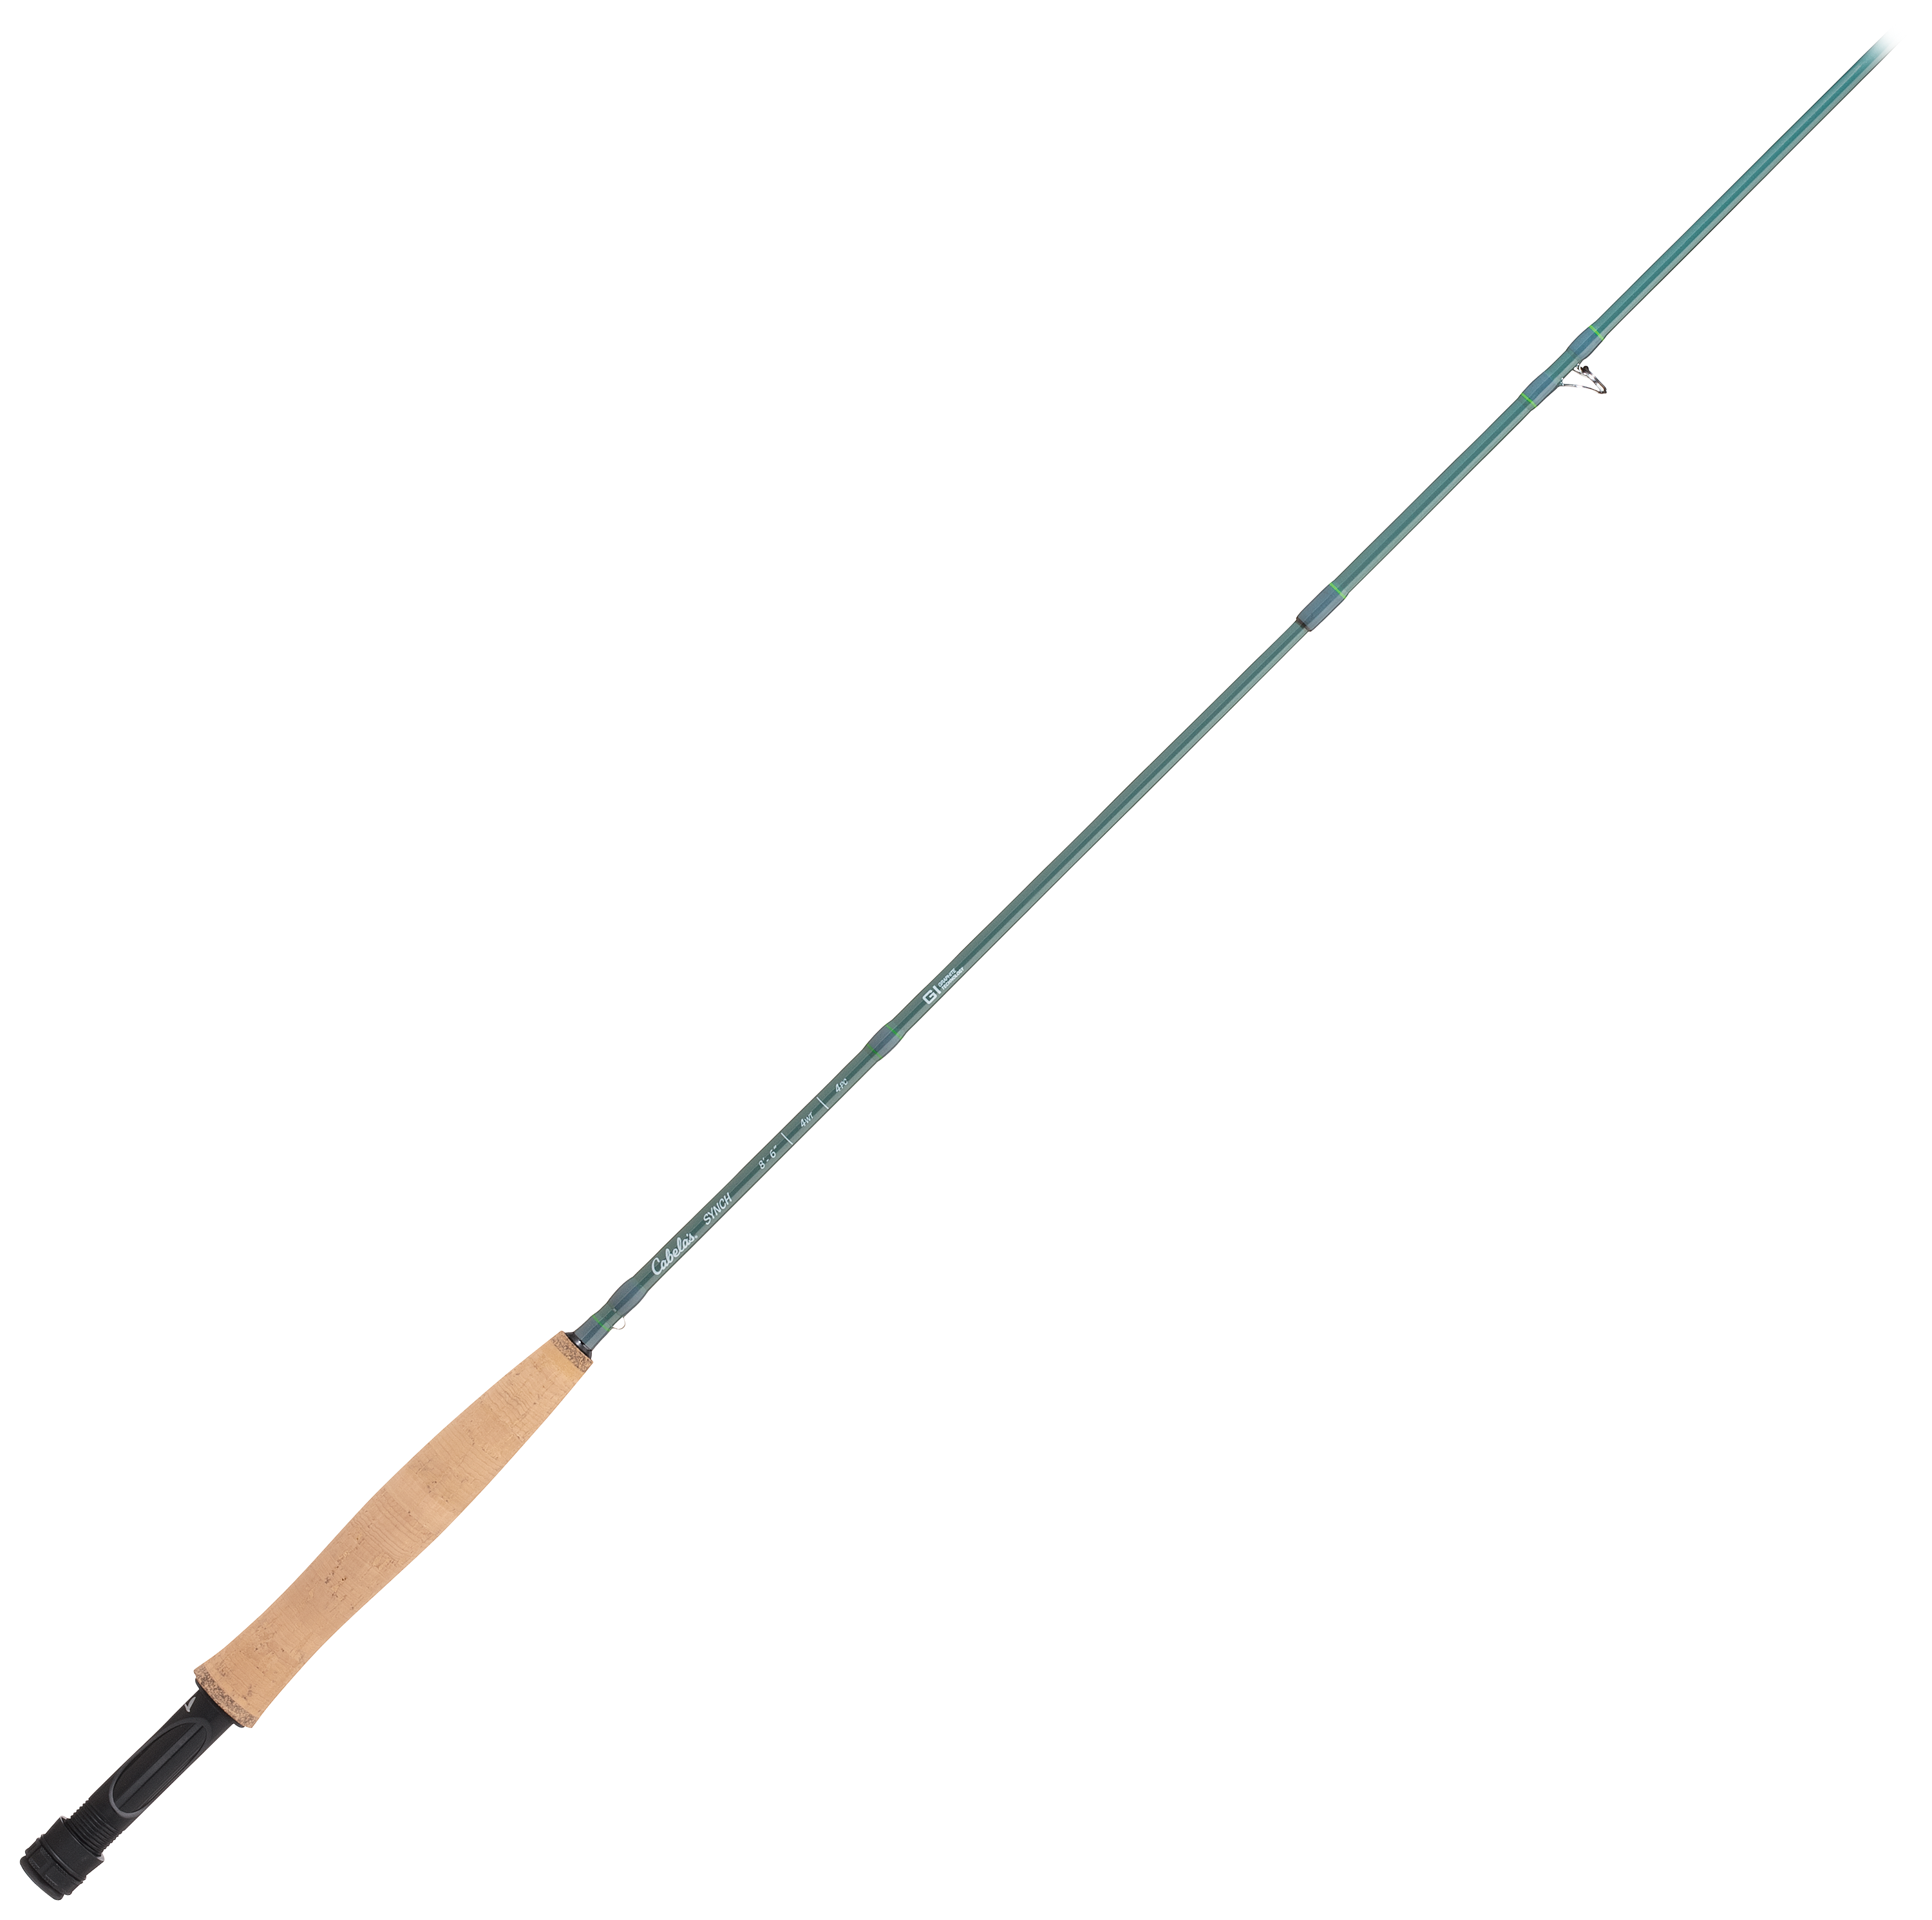 Cabela's Synch Fly Rod - 3 - 7'6